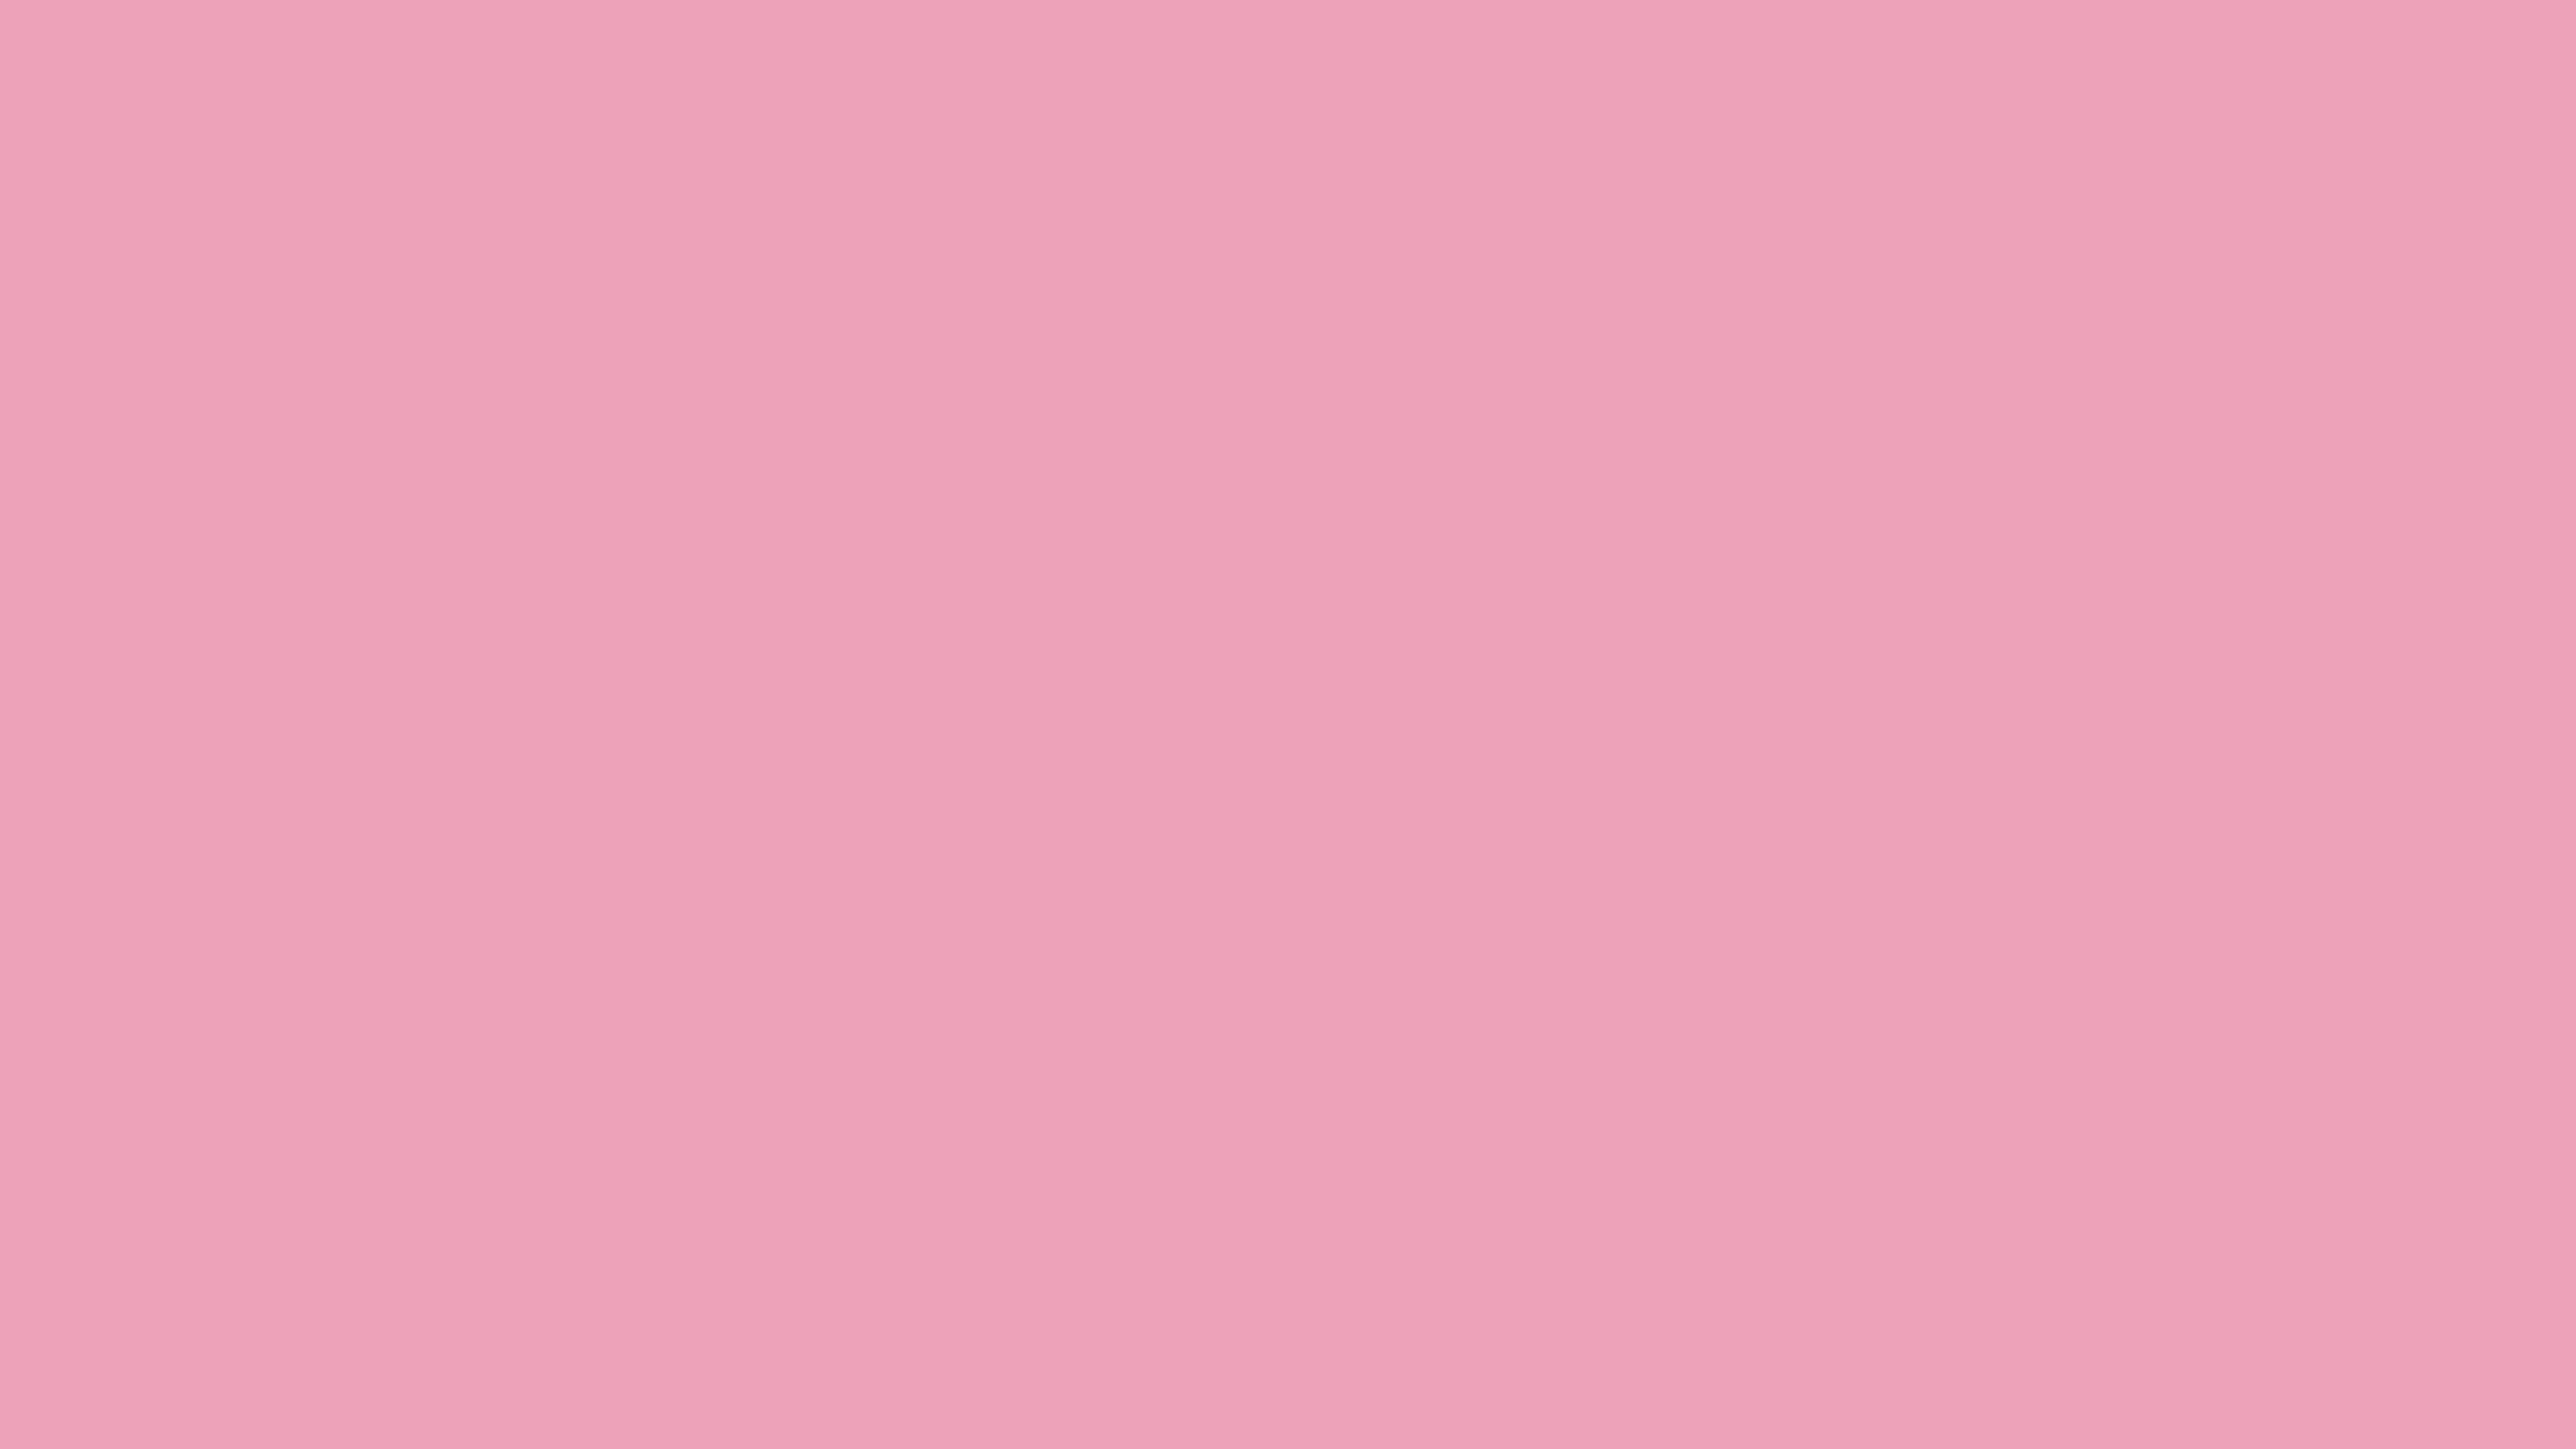 70 10 87. Ffb6c1 цвет. Светло розовый цвет. Розовый фон пастельный цвет. Пастельный розовый.